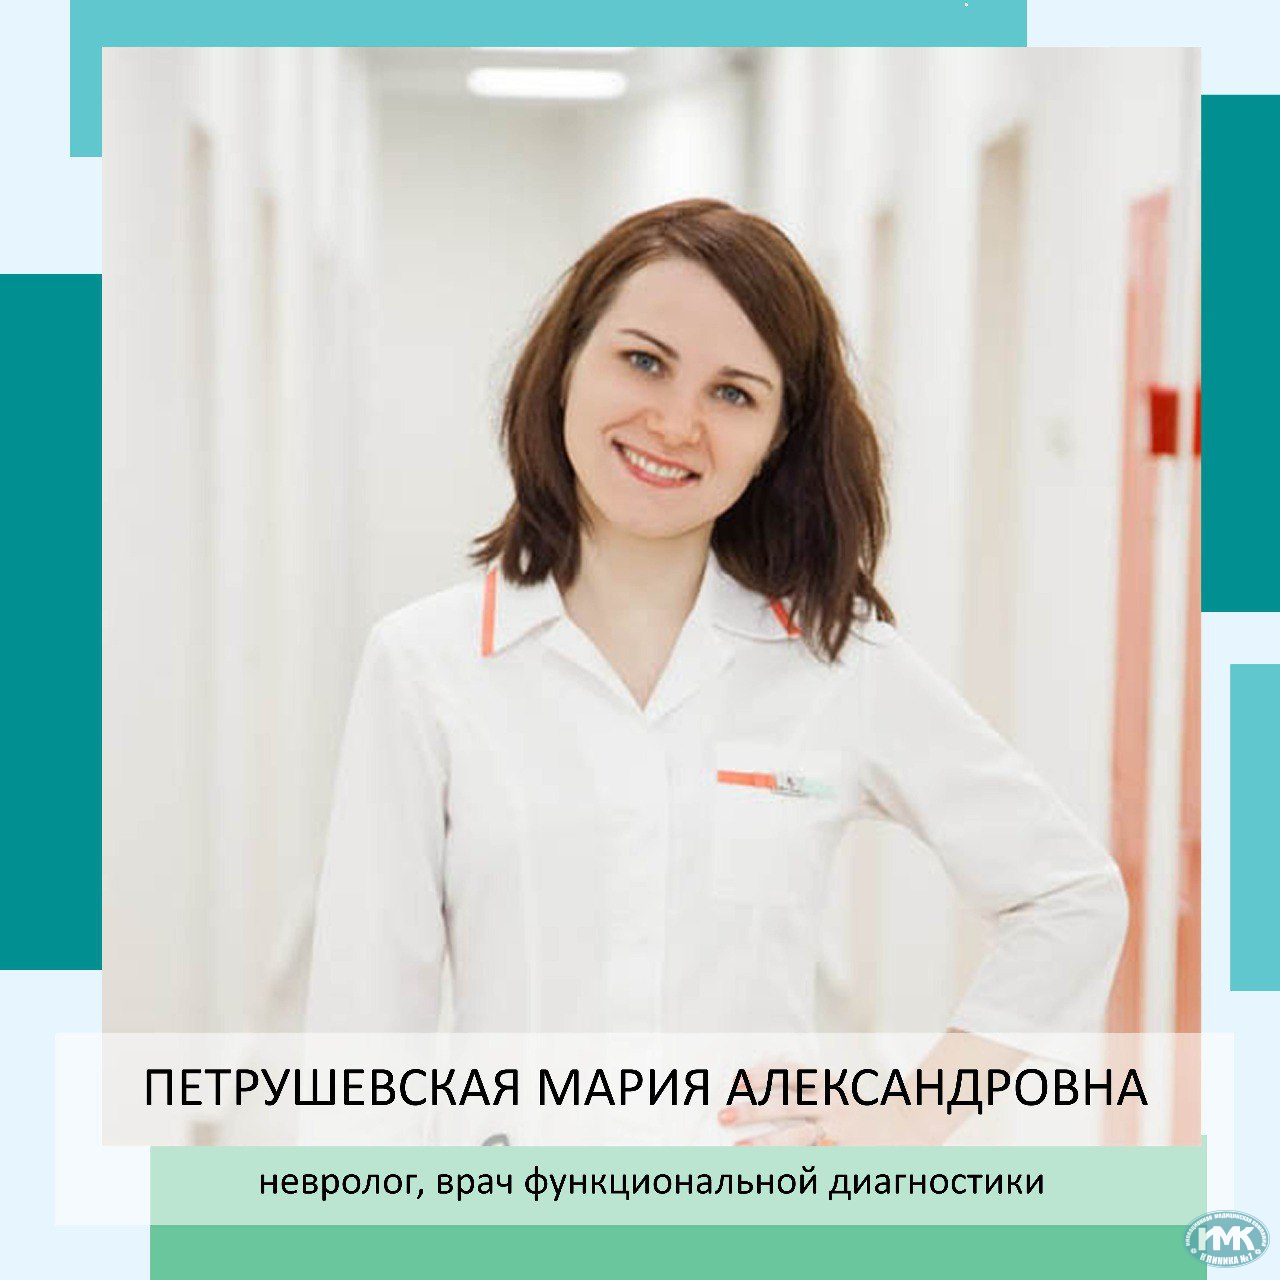 Мария Александровна Петрушевская  Невролог, врач функциональной диагностики